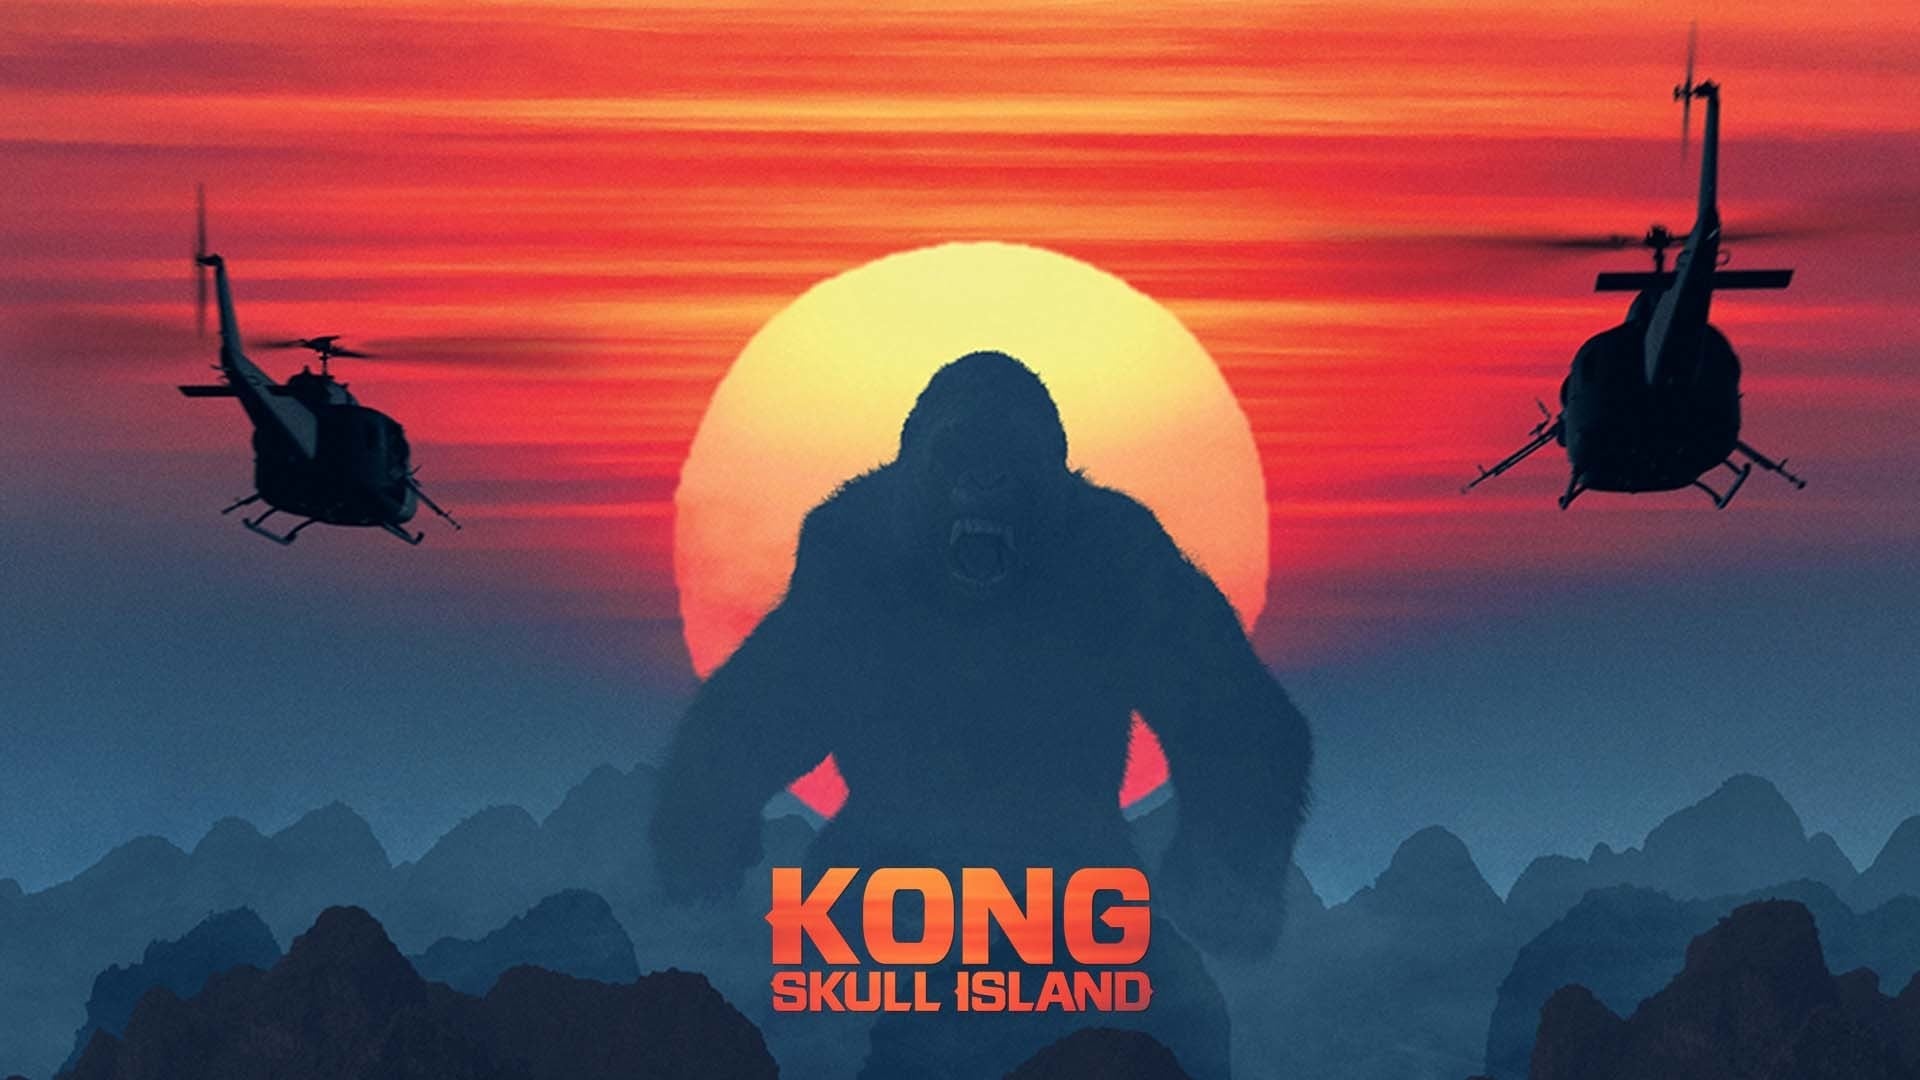 Конг: Остров черепа (2017)